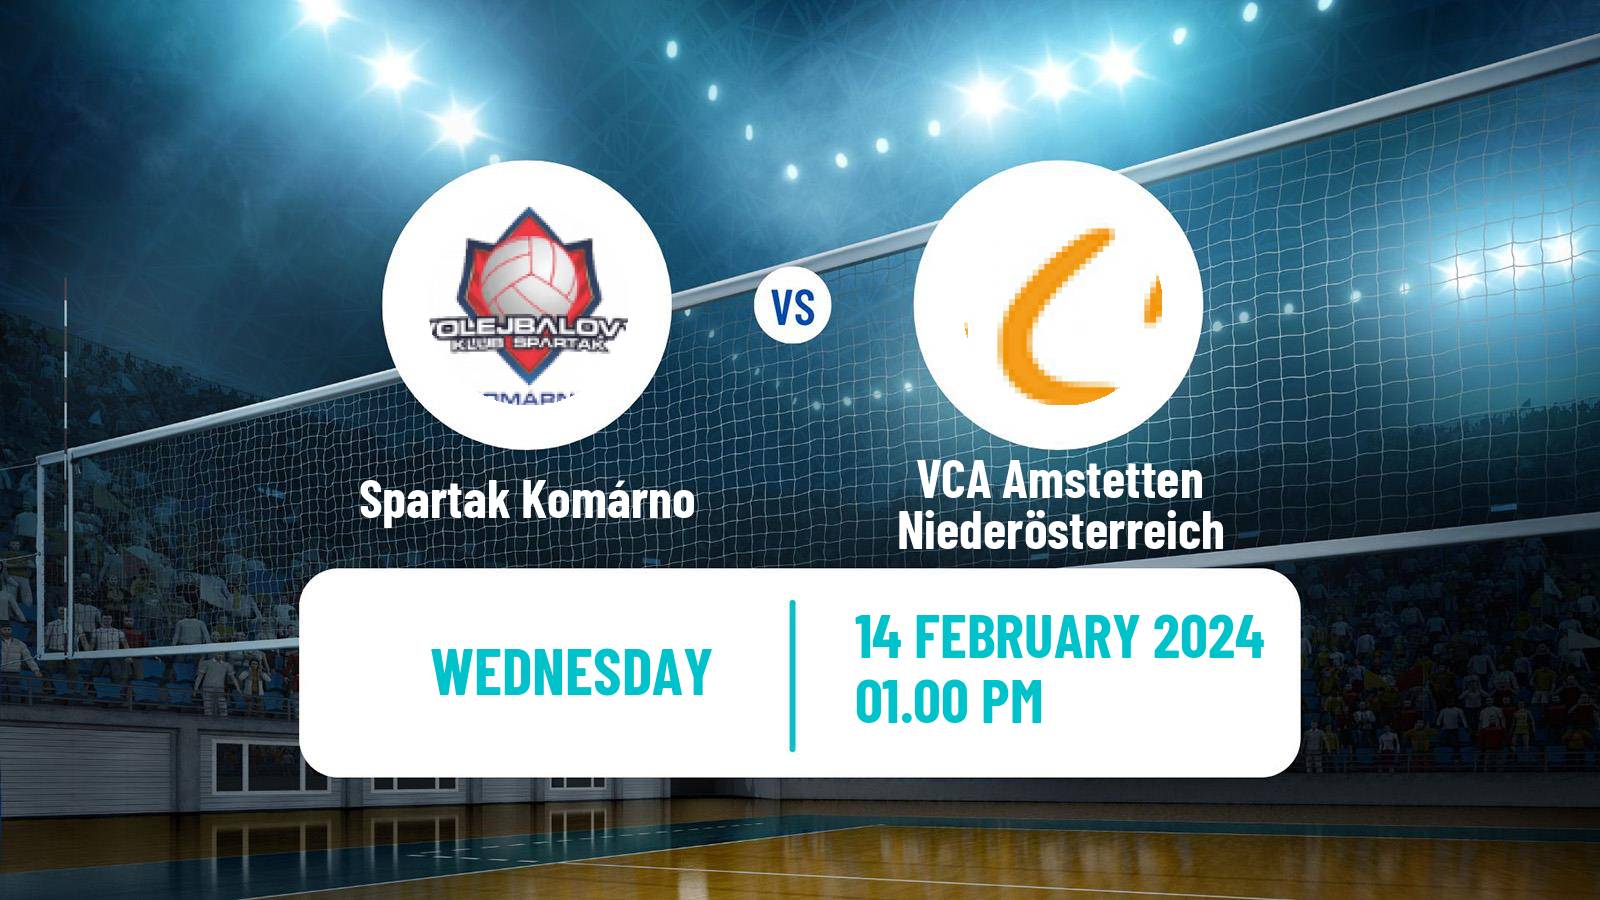 Volleyball MEVZA Spartak Komárno - VCA Amstetten Niederösterreich